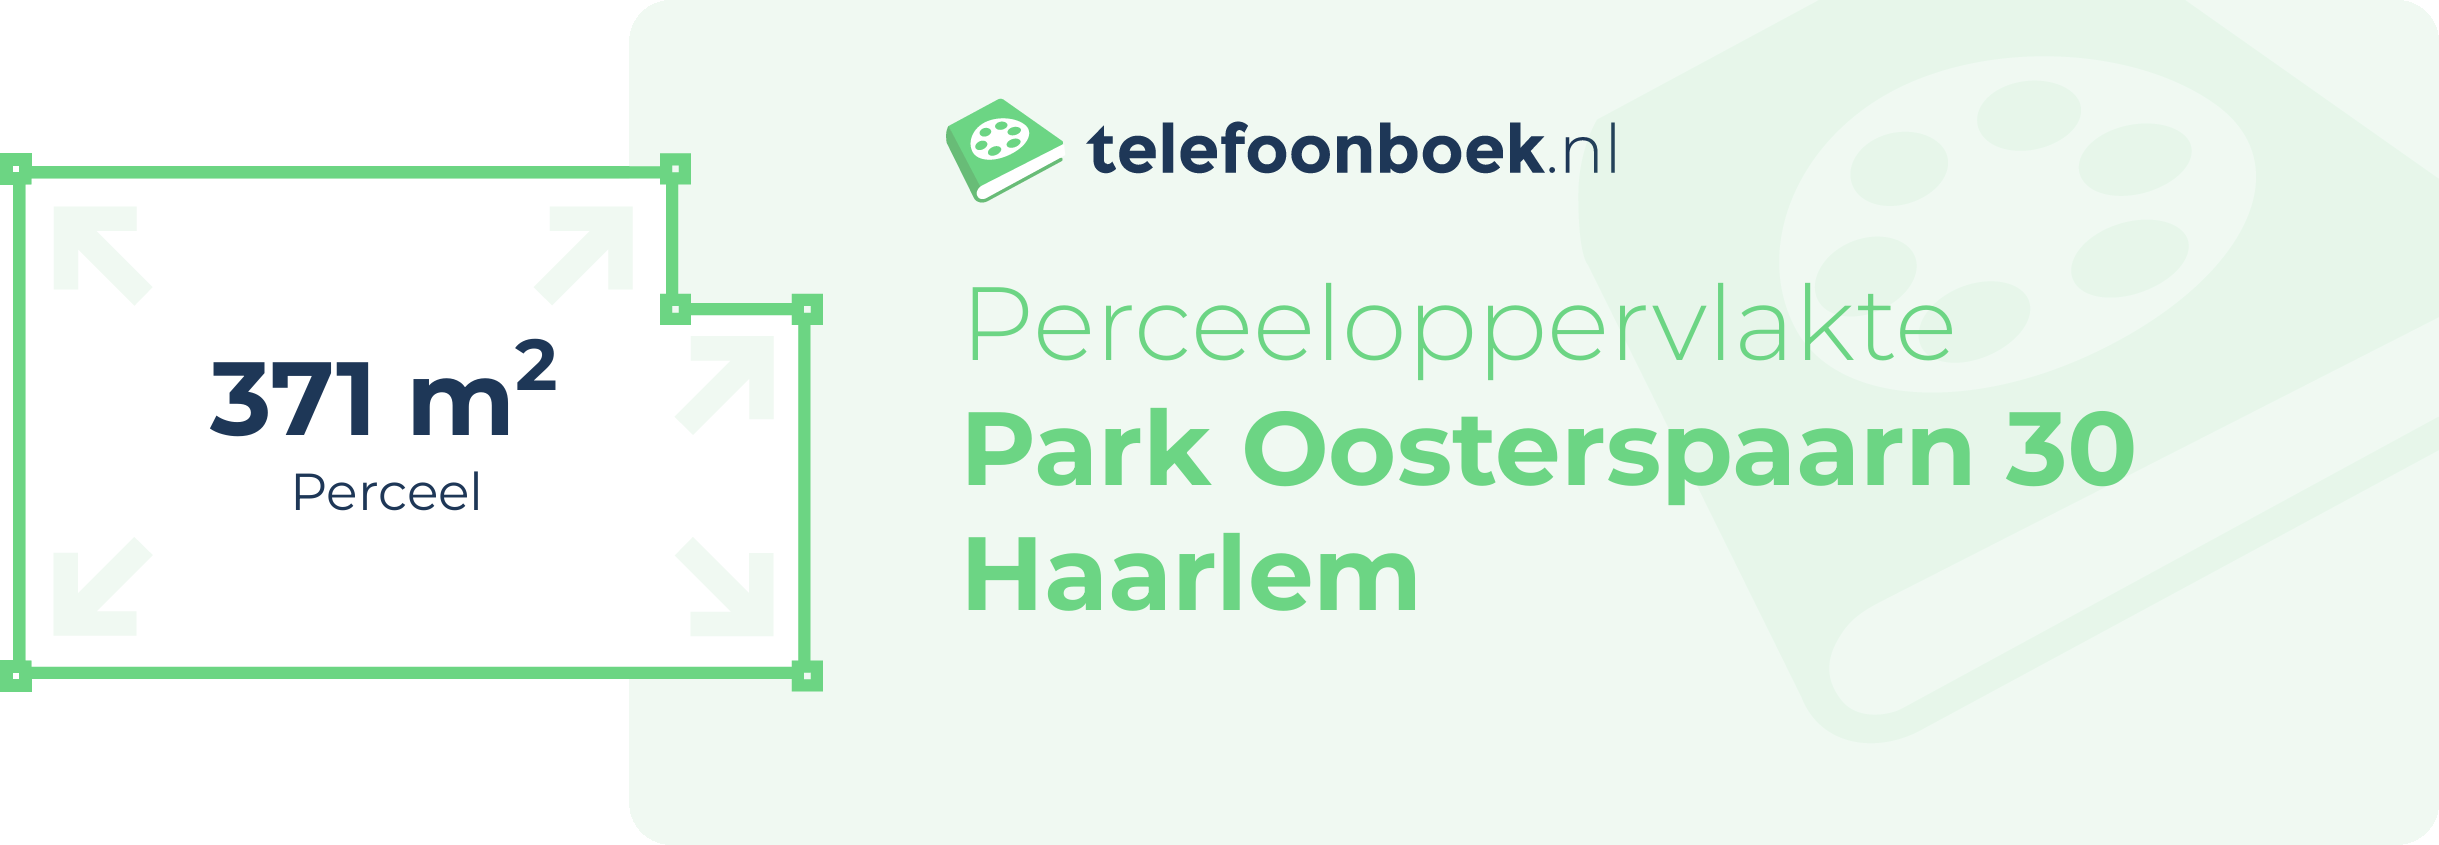 Perceeloppervlakte Park Oosterspaarn 30 Haarlem